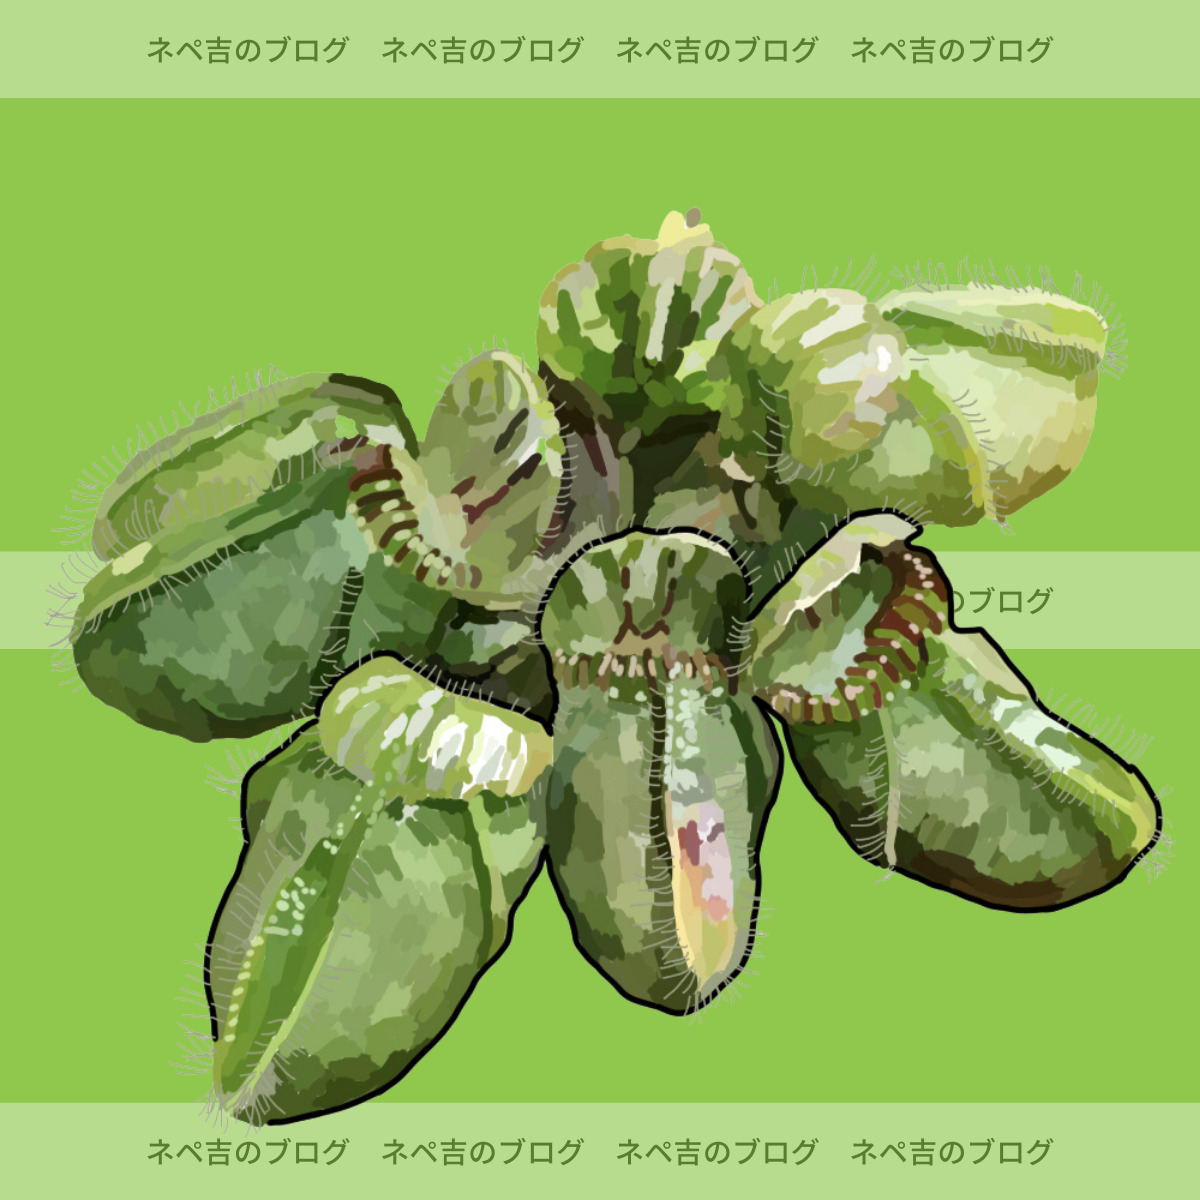 セファロタス・フォリキュラリス】不思議な食虫植物のセファロタス